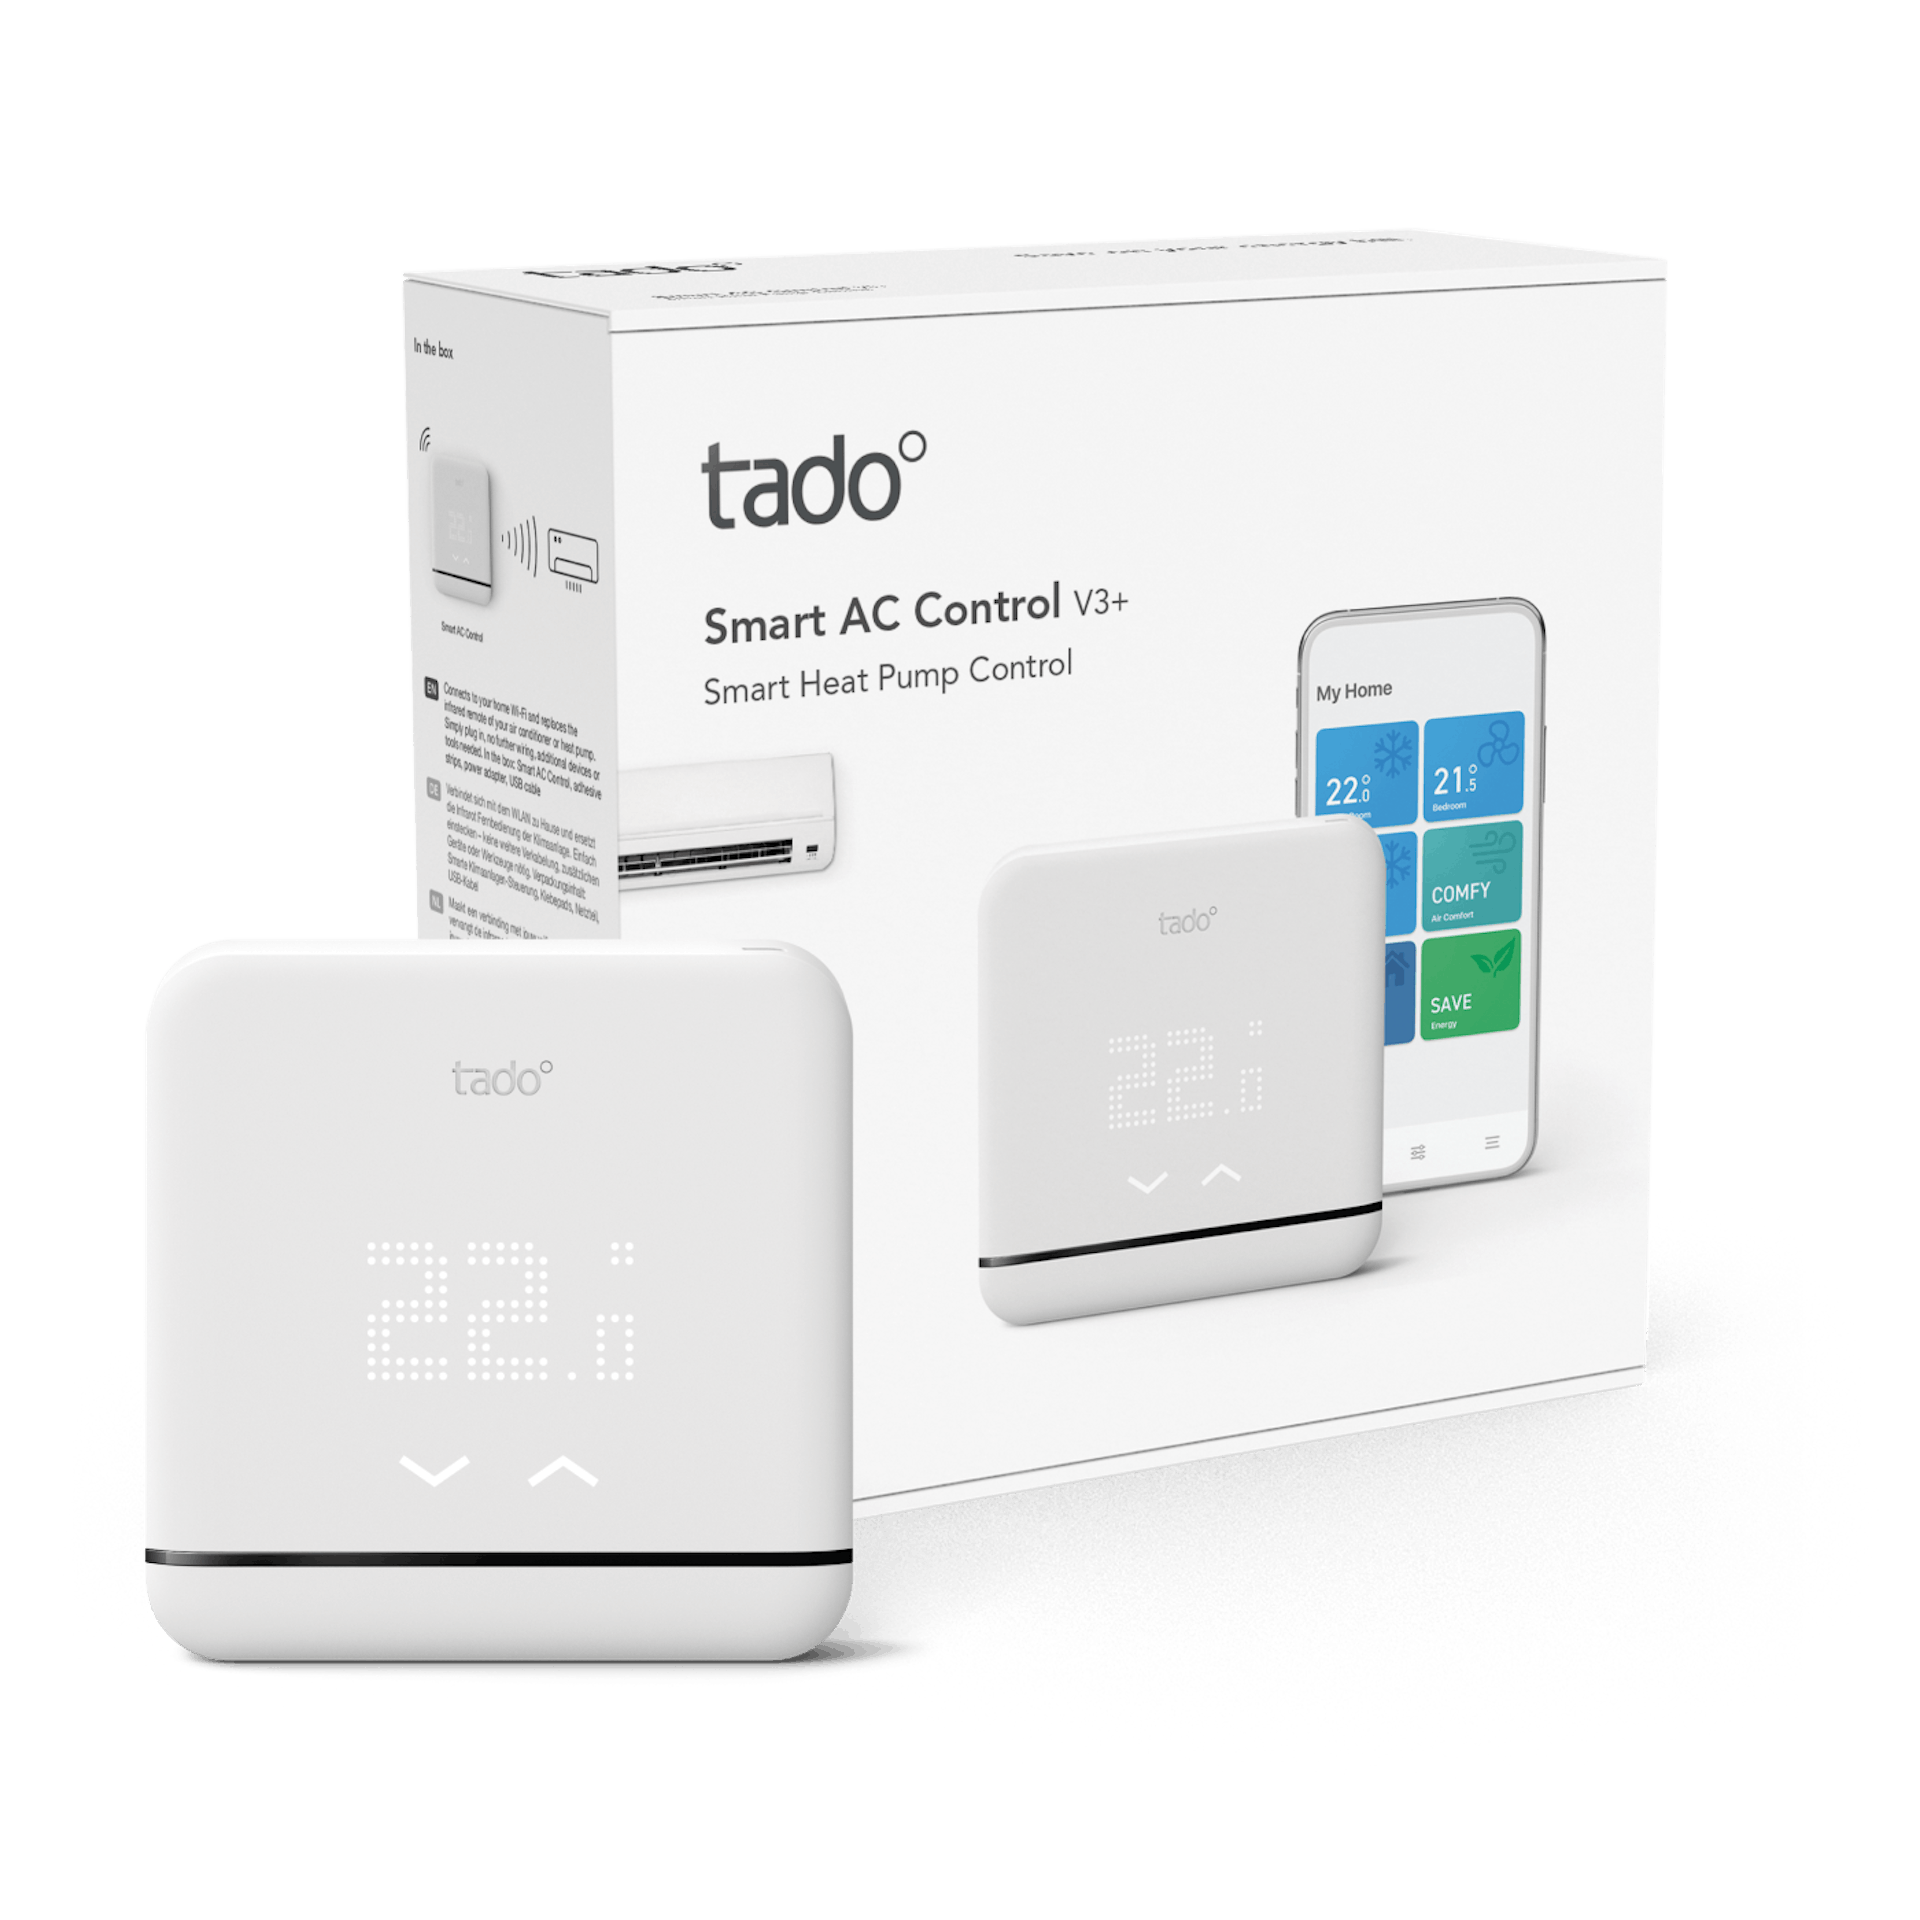 Tado Smart AC Control V3+ - Packaging